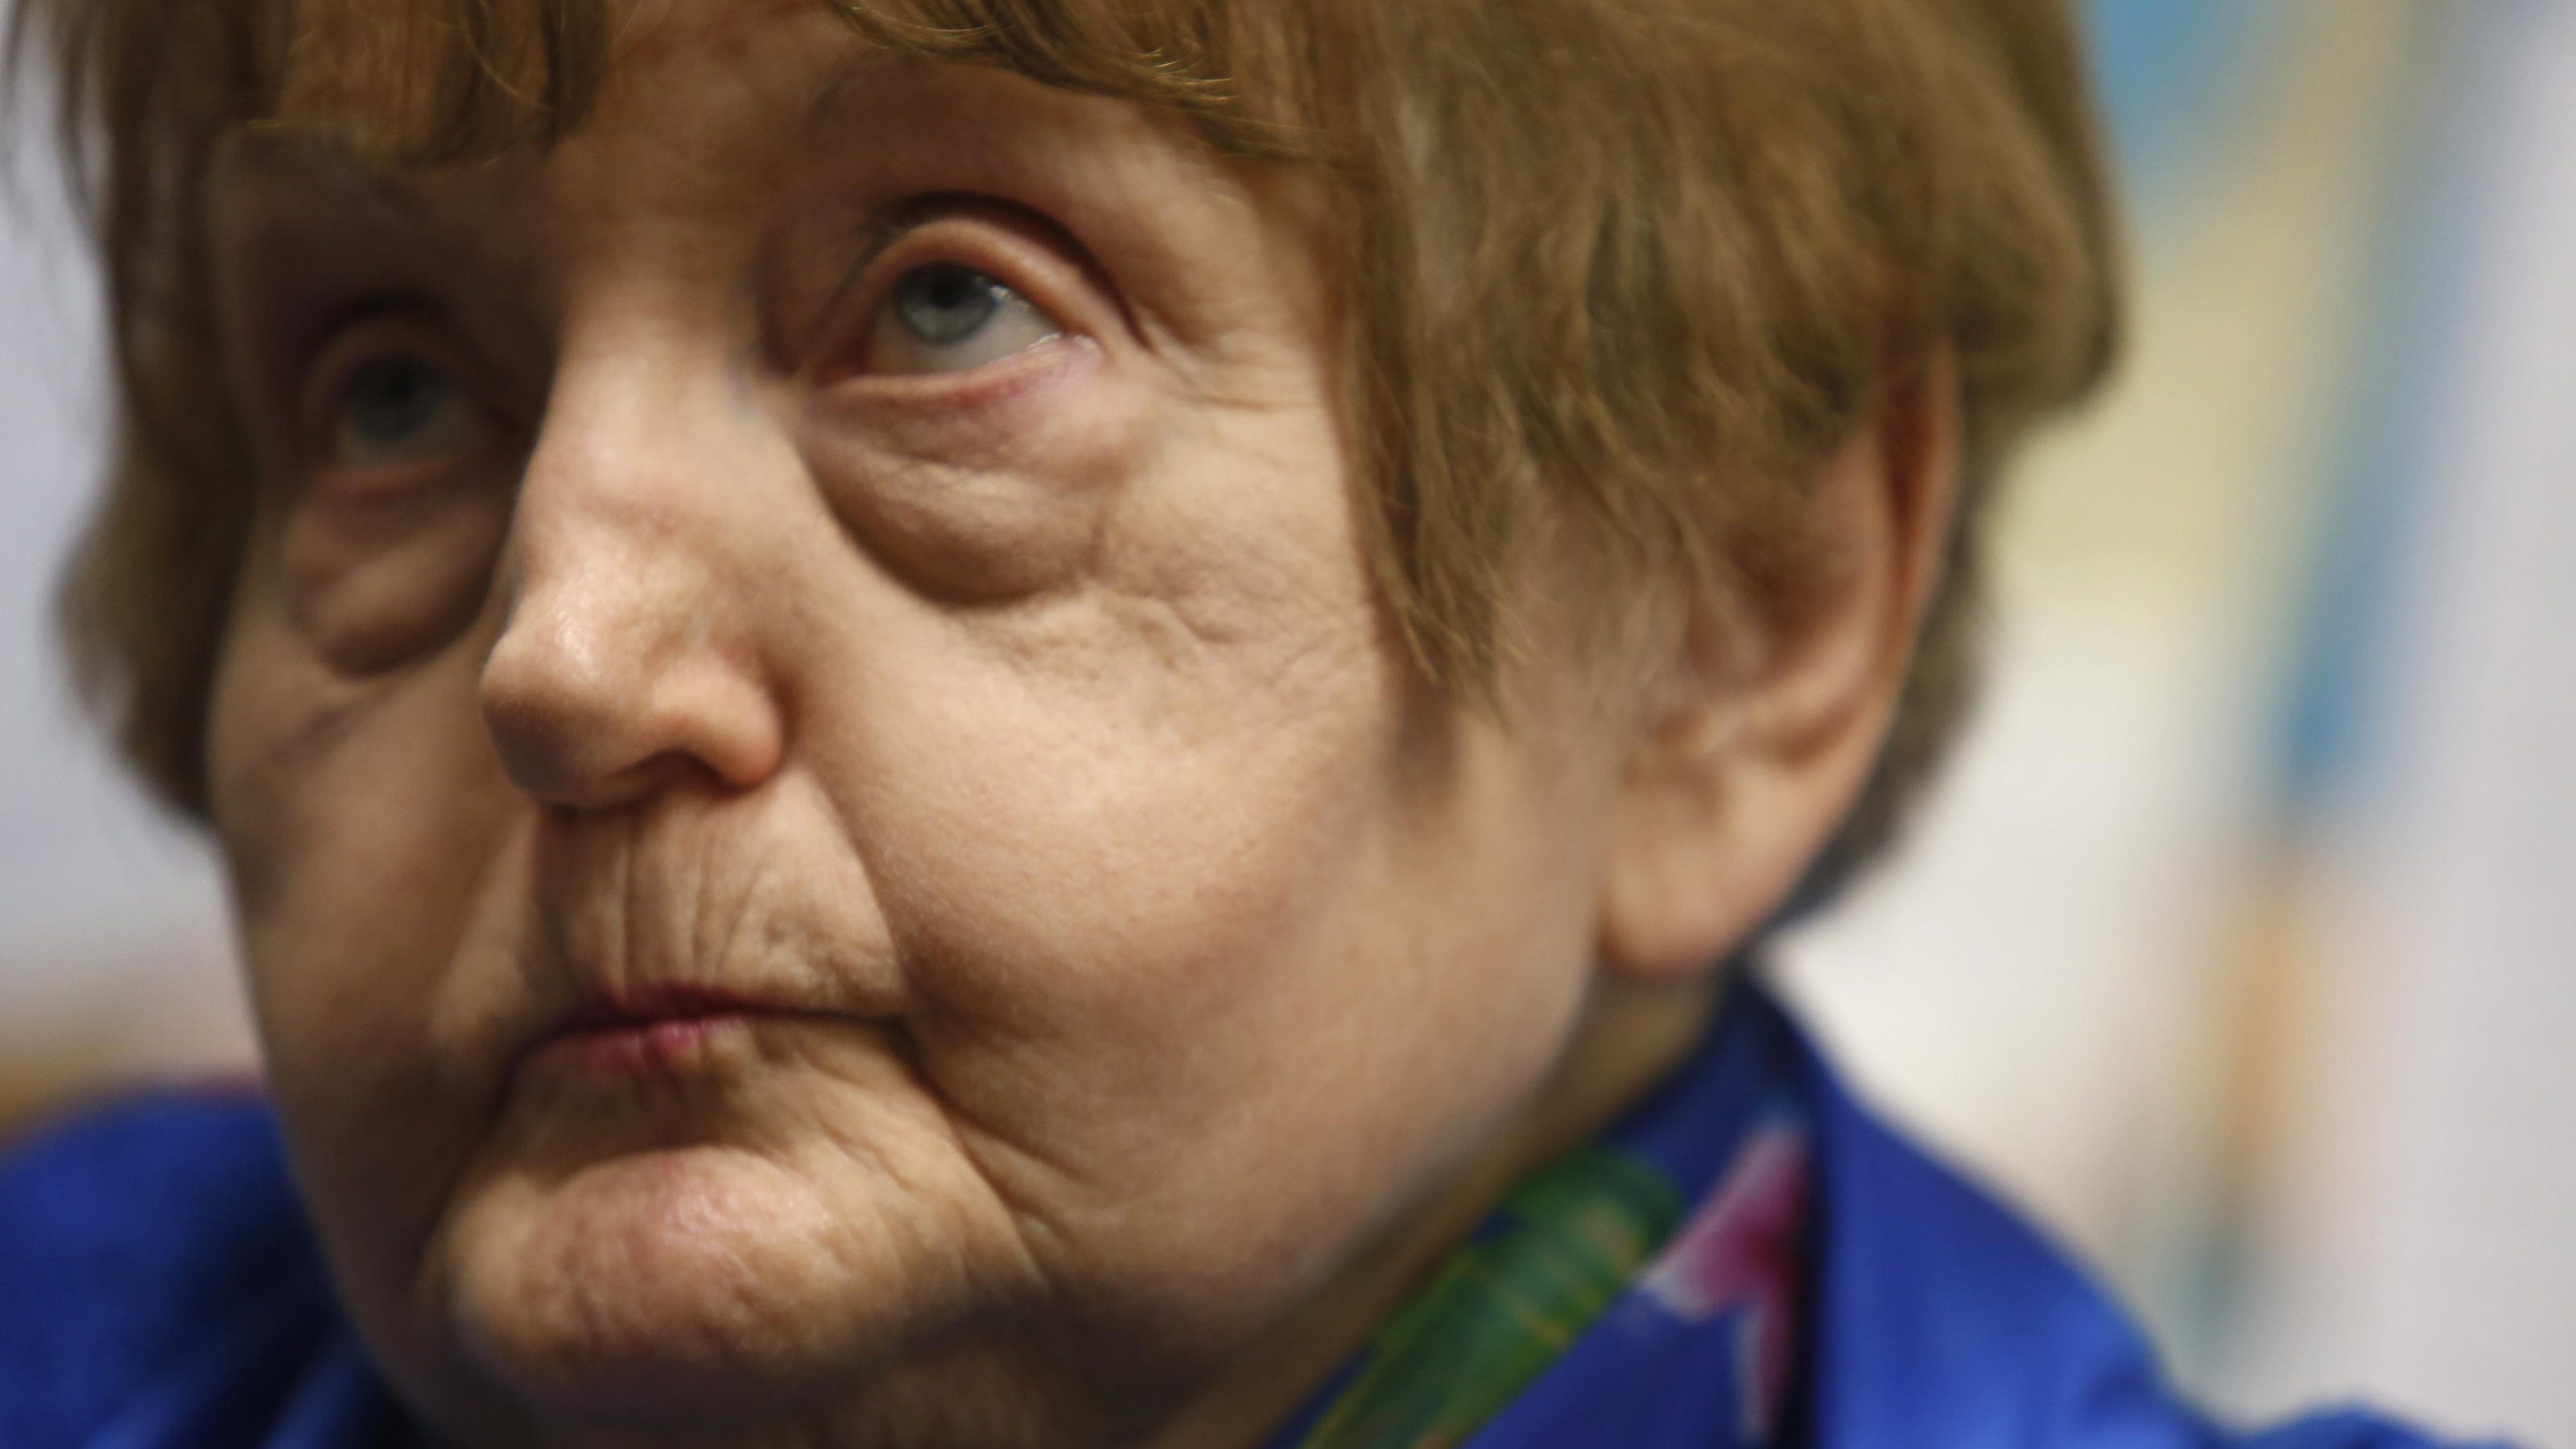 Holocaust Survivor Eva Kor Nazi’s Hug Just ‘kindness’